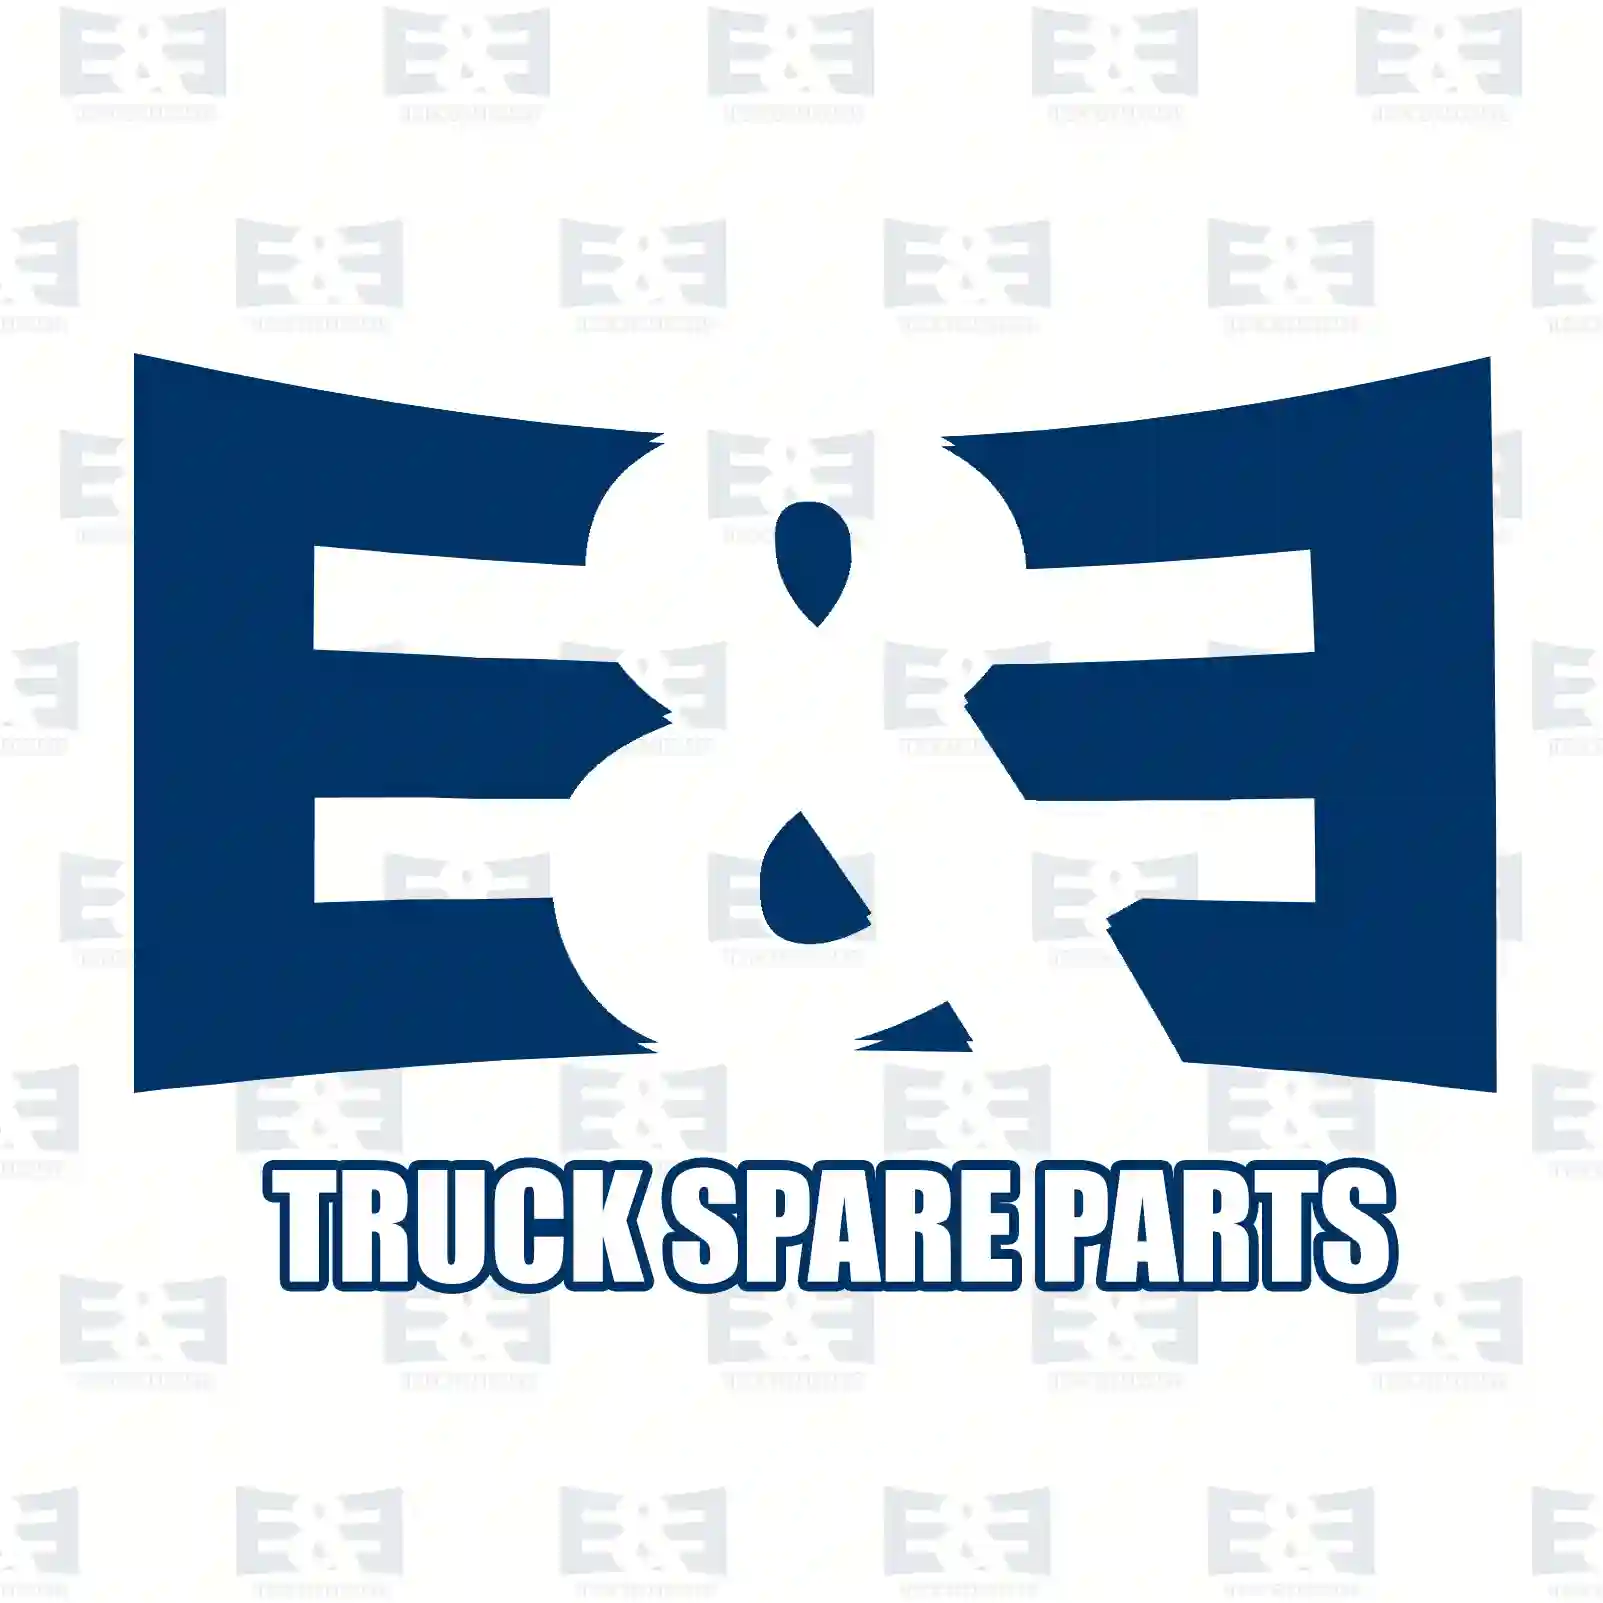 Oil filter, 2E2277631, 1329876, 1381235, ZG02426-0008 ||  2E2277631 E&E Truck Spare Parts | Truck Spare Parts, Auotomotive Spare Parts Oil filter, 2E2277631, 1329876, 1381235, ZG02426-0008 ||  2E2277631 E&E Truck Spare Parts | Truck Spare Parts, Auotomotive Spare Parts